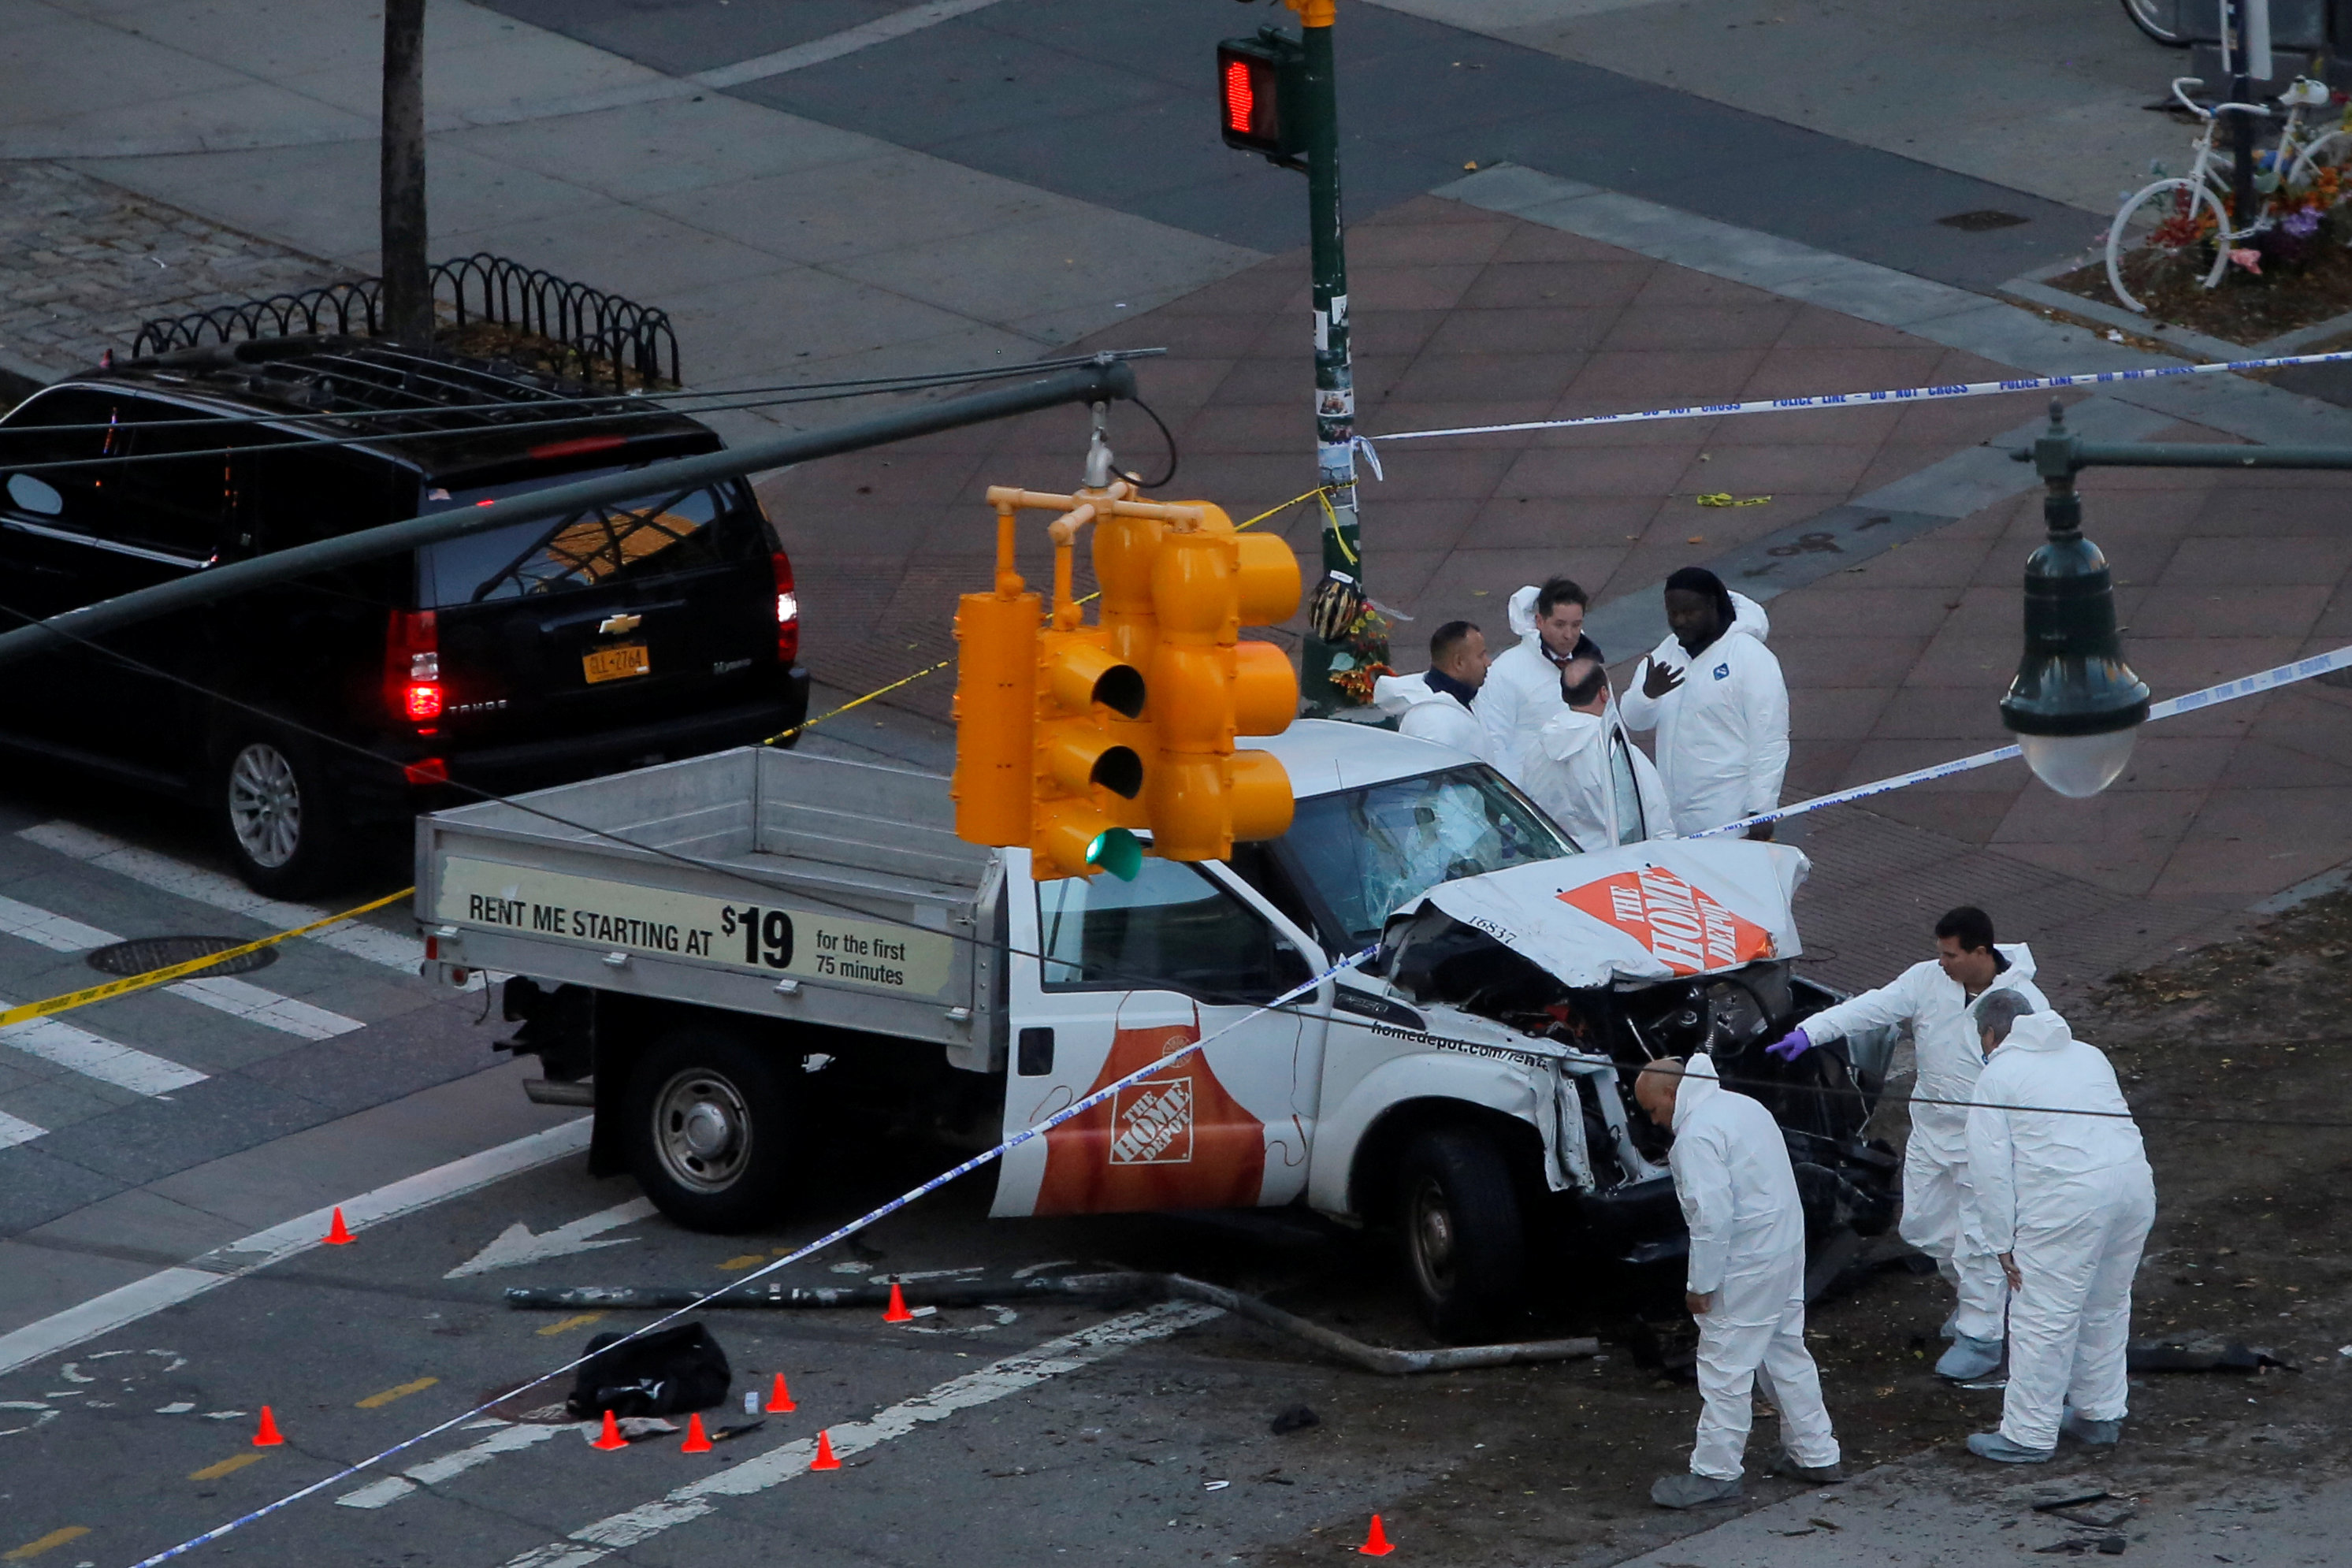 Autor del atentado en Nueva York es acusado de terrorismo